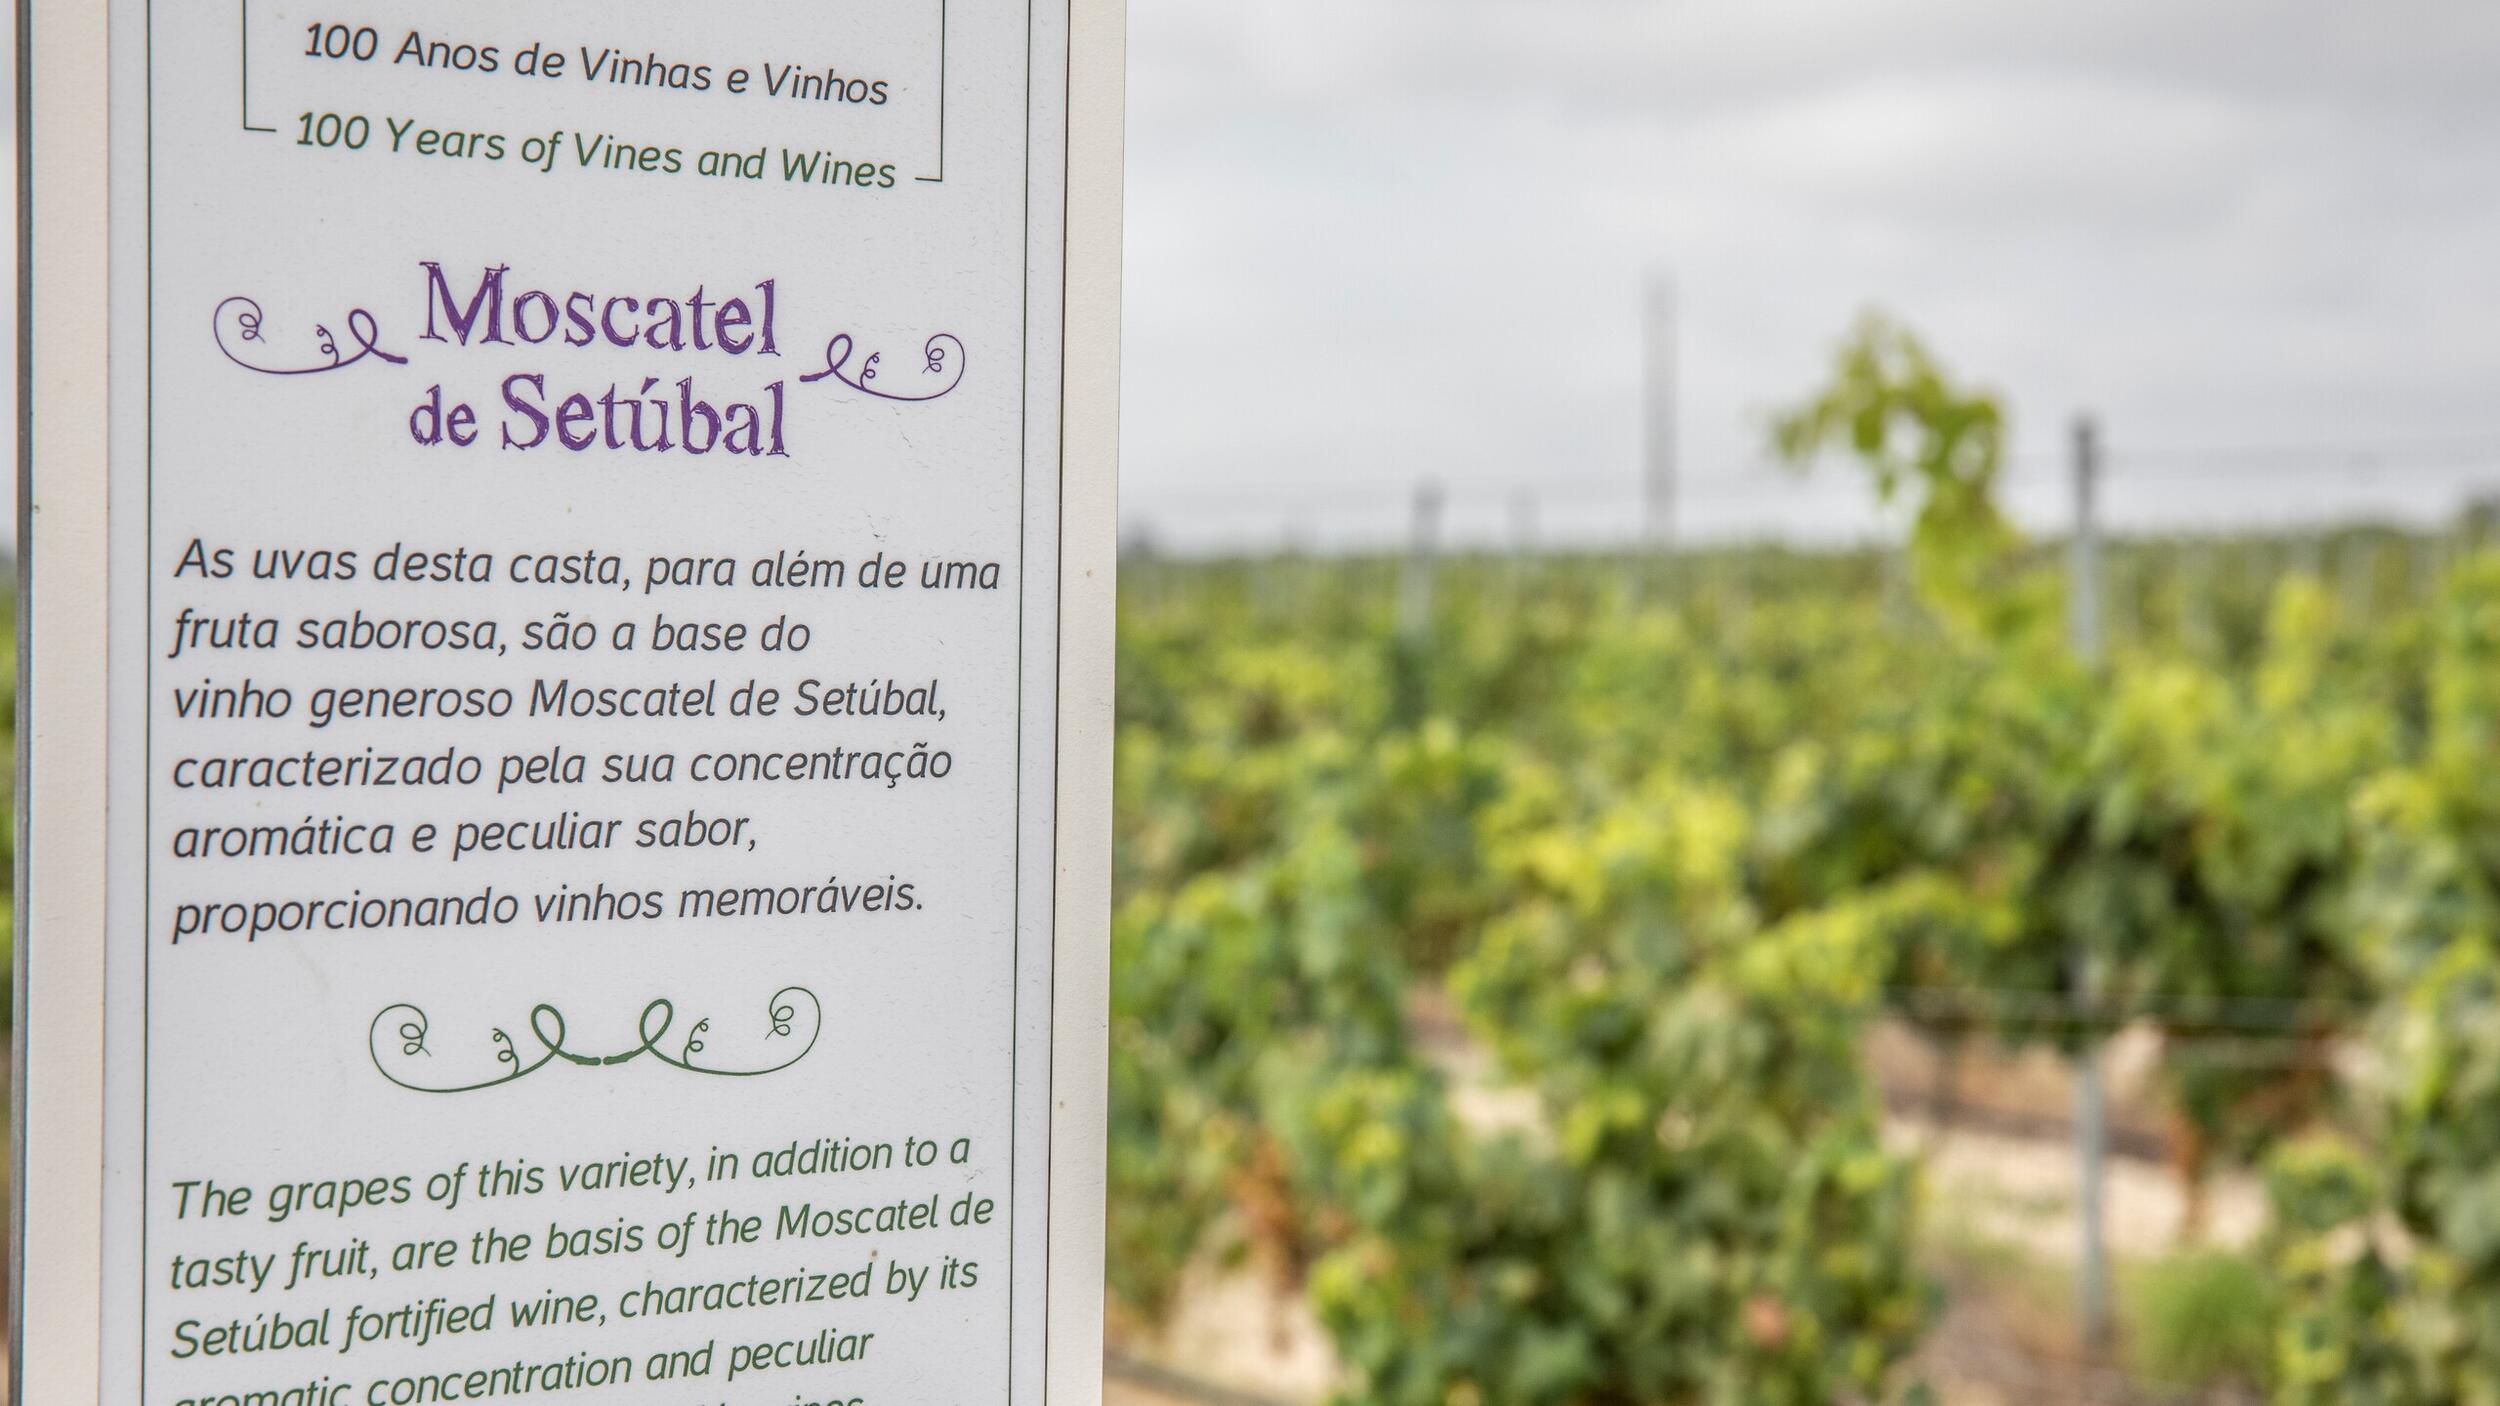 “Jardins de Vinhas” Biotrails promove percurso guiado pela paisagem vinícola de Palmela